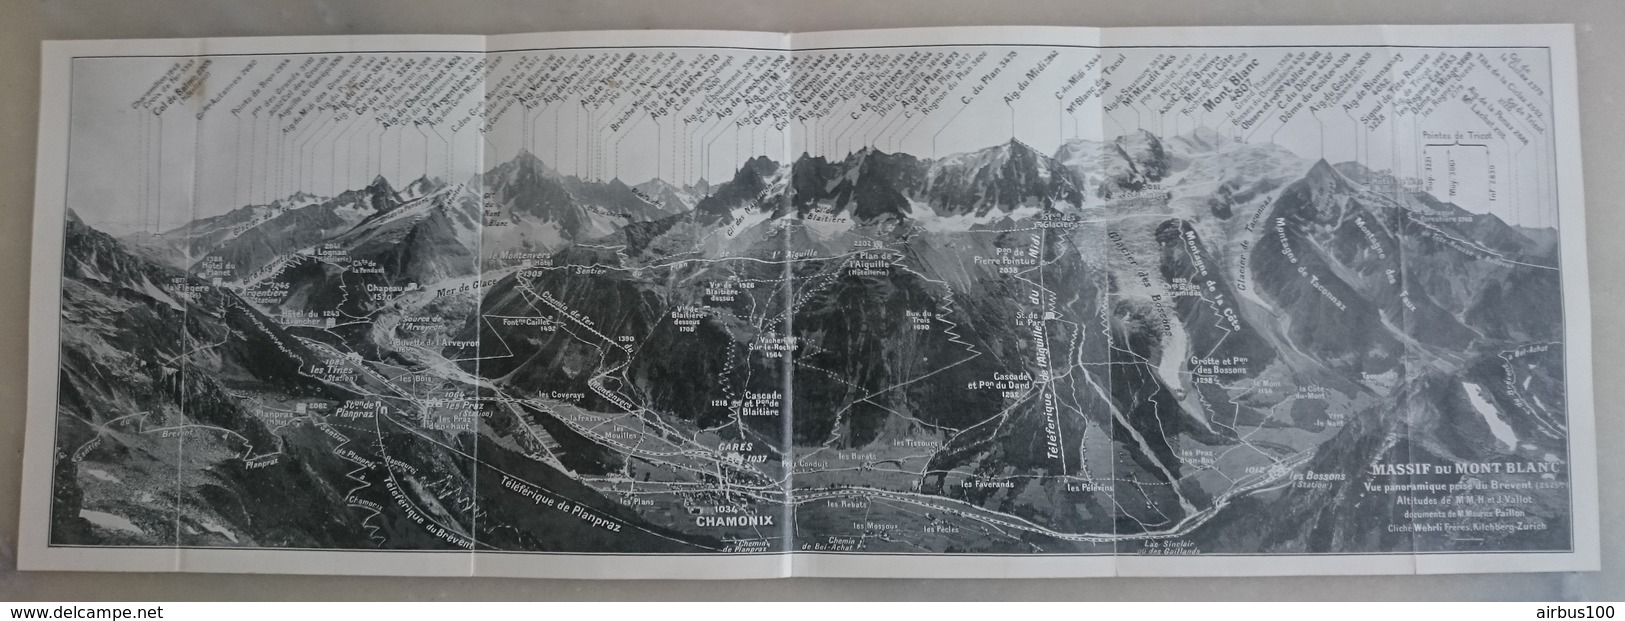 CARTE PLAN 1921 - MASSIF Du MONT BLANC VUE PANORAMIQUE PRISE Du BREVENT (2525 M) CHAMONIX - VALLOT PAILLON WEHRLI ZURICH - Topographical Maps